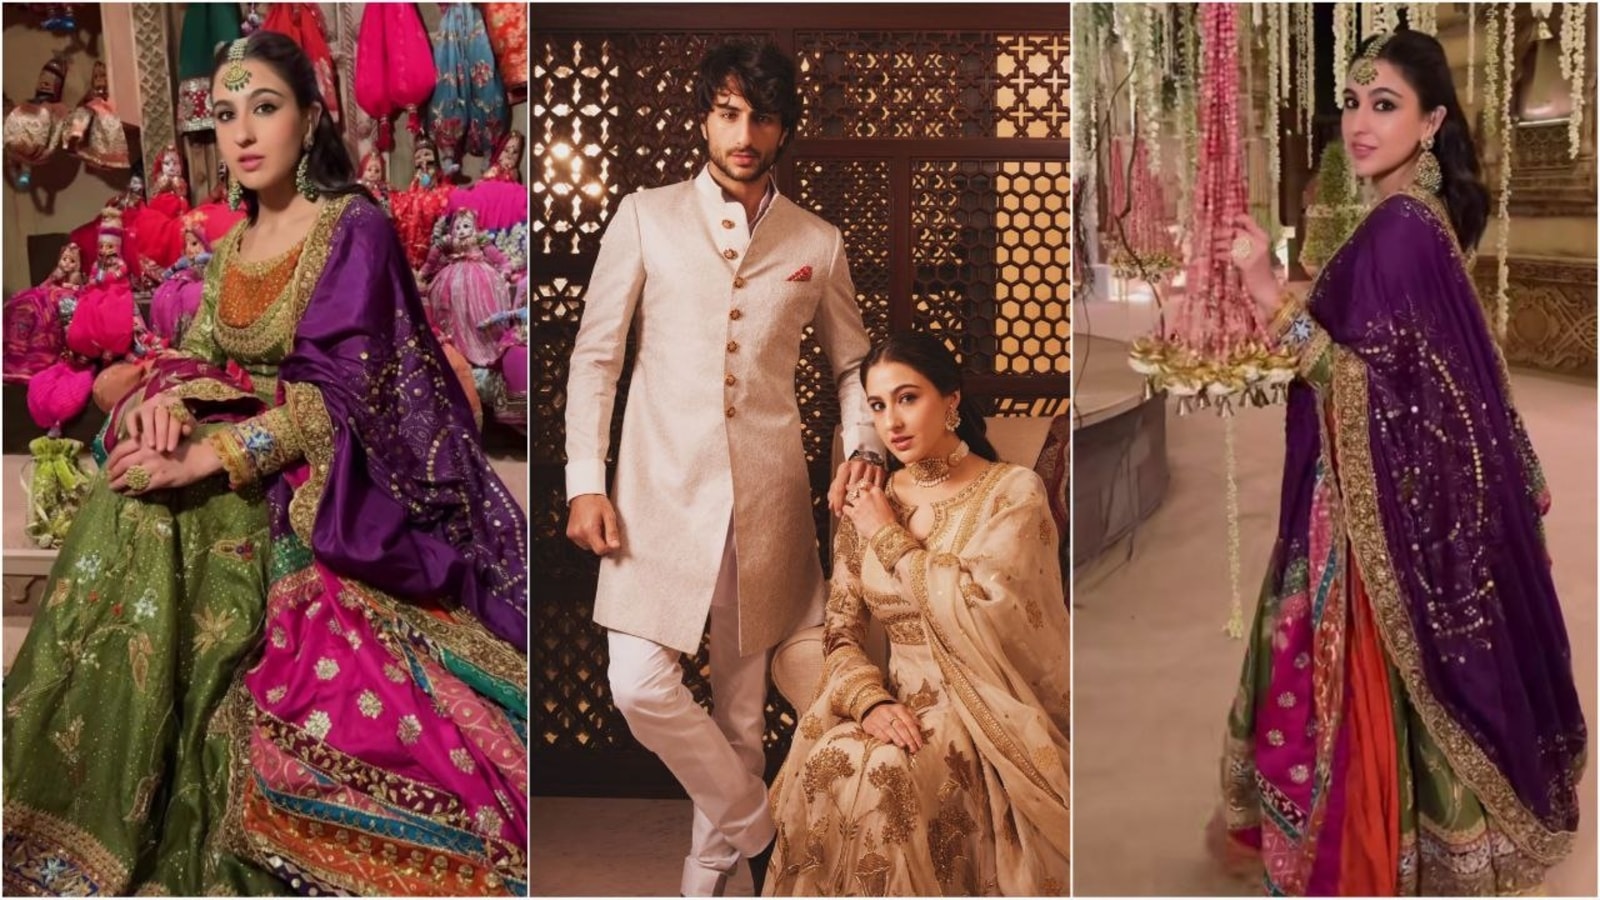 सारा अली खान को अपनी शानदार अंबानी शादी की पोशाक के पीछे पाकिस्तानी डिजाइनर का उल्लेख करने में विफल रहने के लिए आलोचना का सामना करना पड़ा